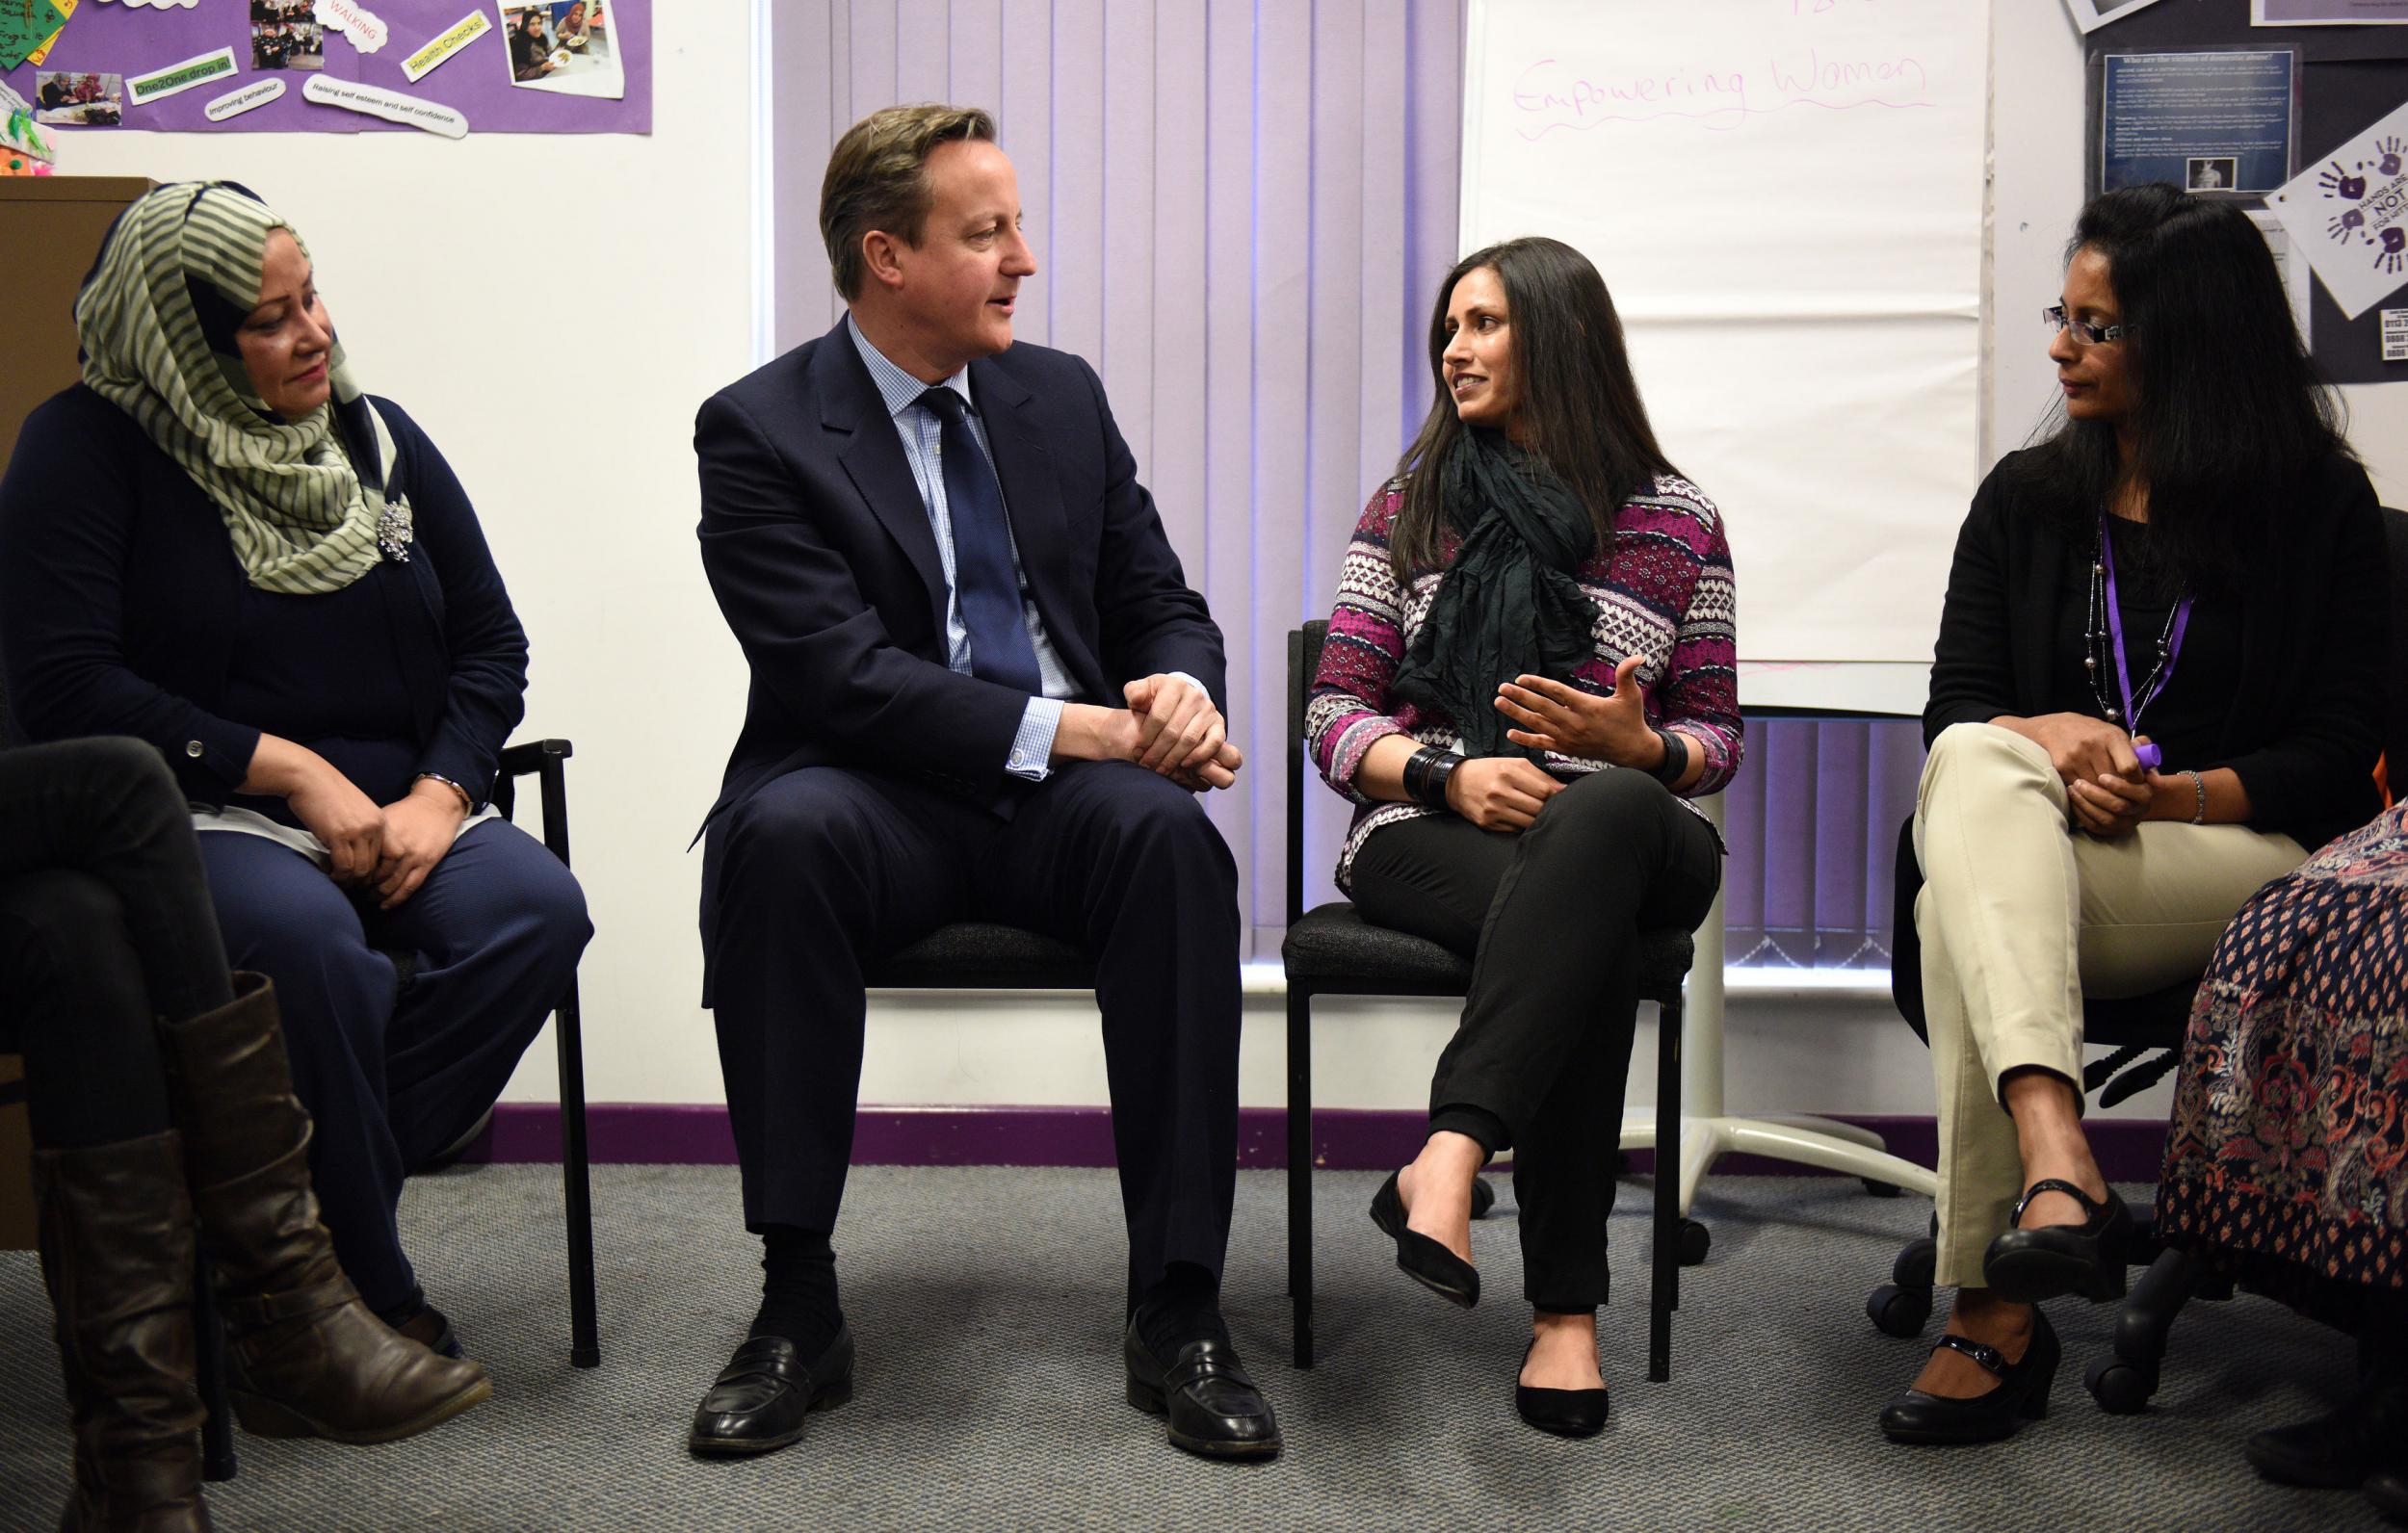 David Cameron speaking to women at language class in Leeds